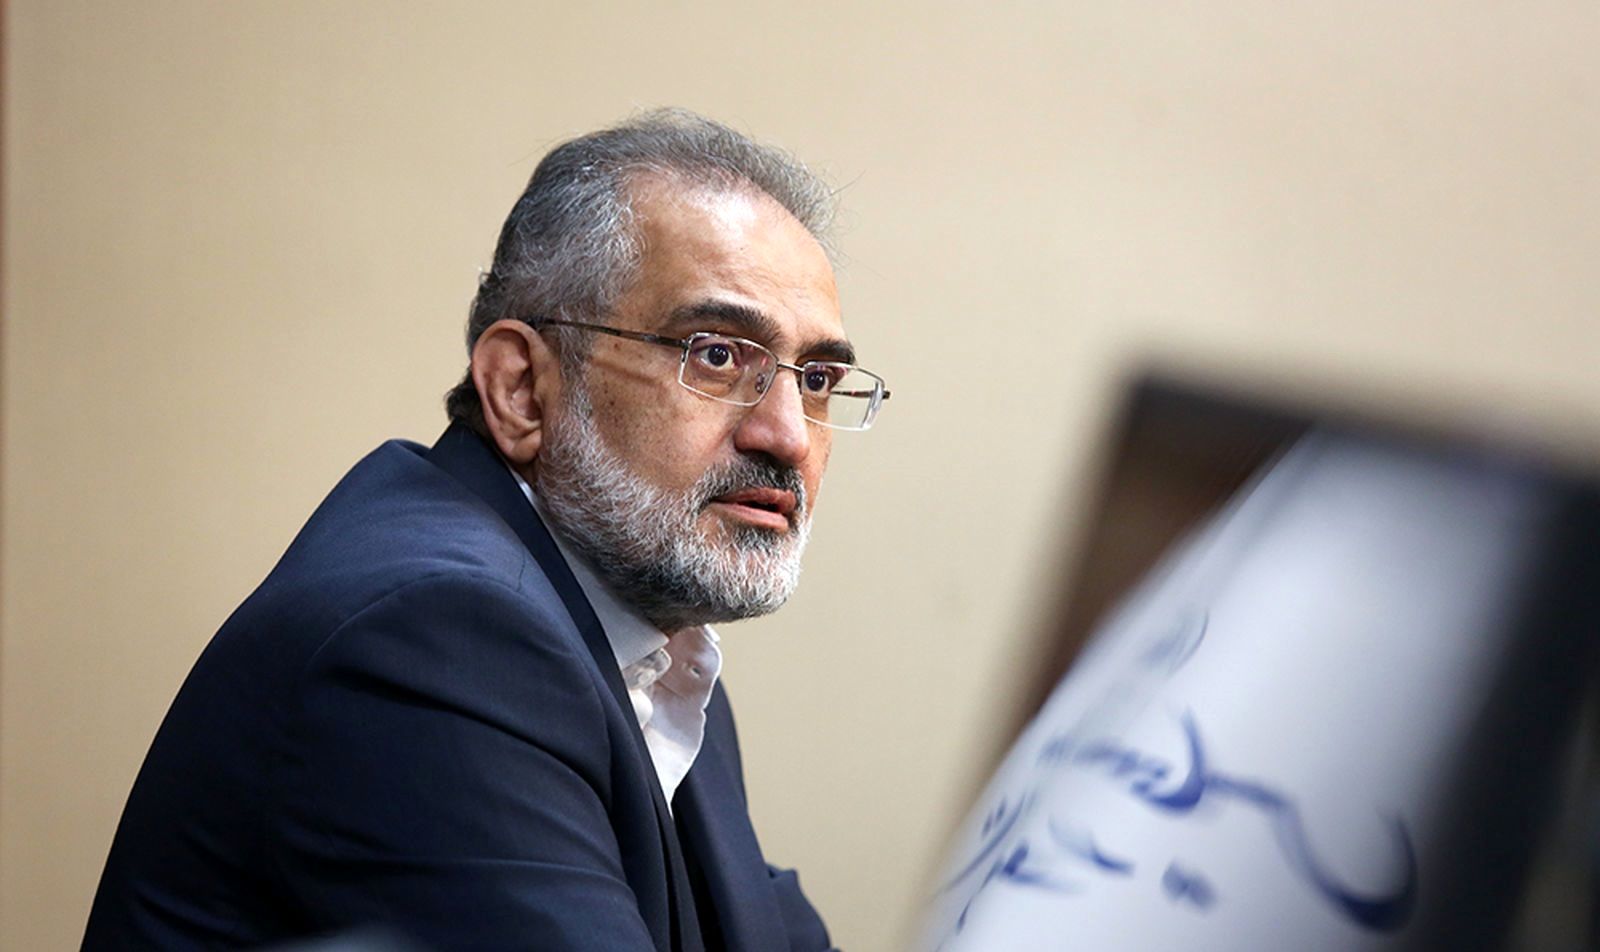 حسینی: دولت توجه ویژه ای به پیگیری مطالبات بر حق نمایندگان دارد